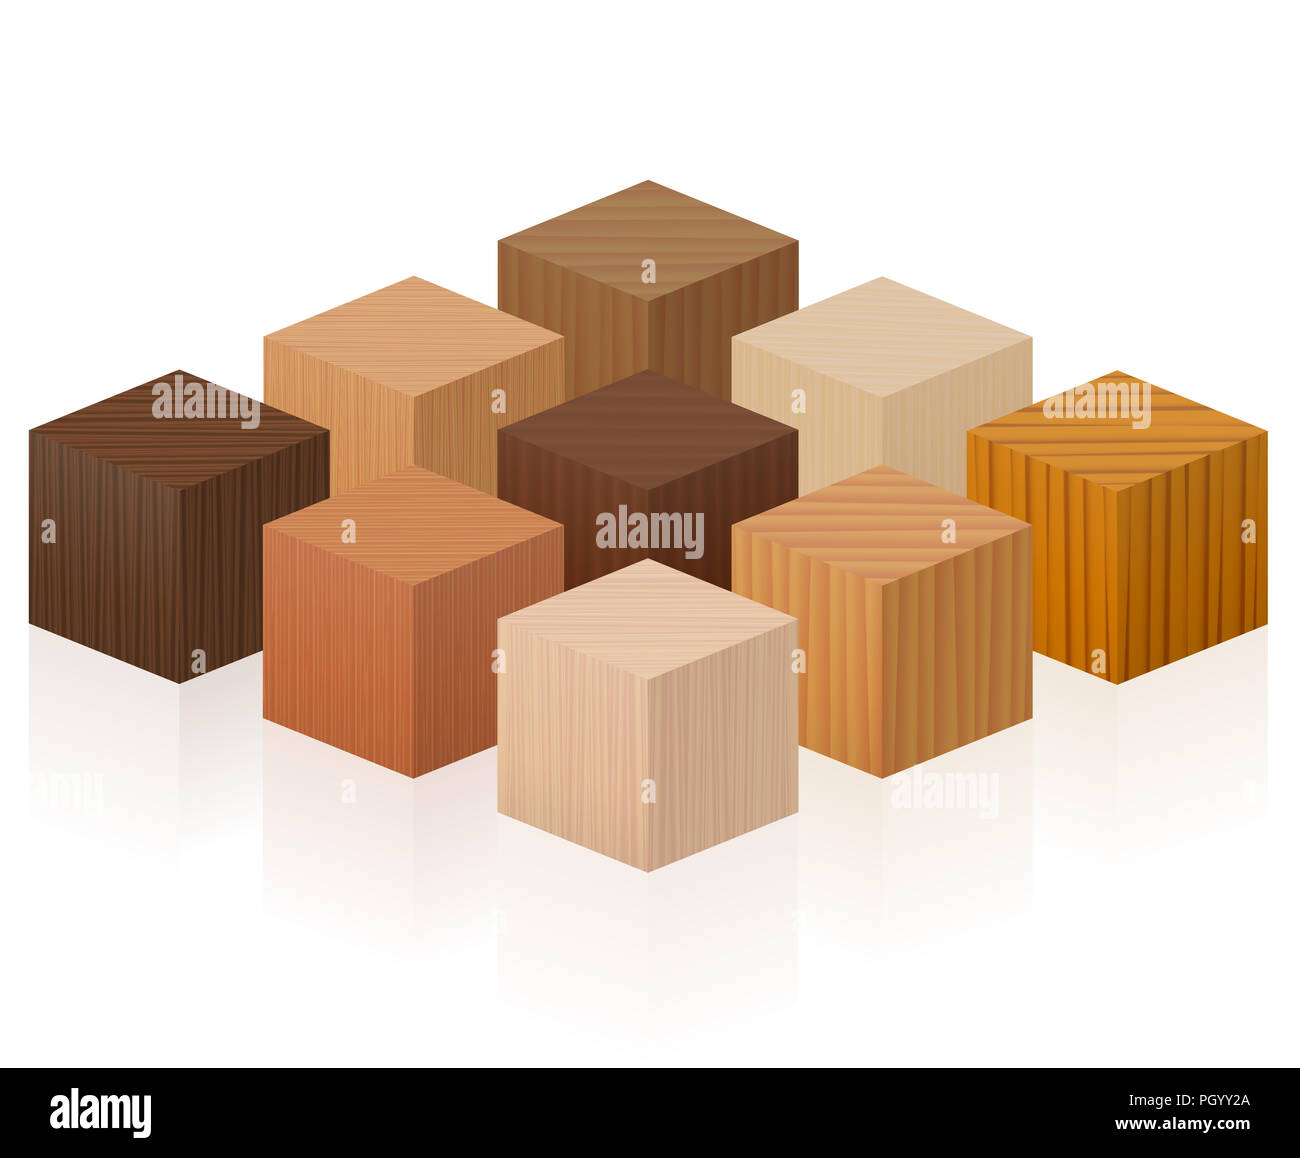 Cubi di legno - campioni di legno con diverse texture, colori, smalti, da vari alberi di scegliere - marrone scuro, grigio chiaro, rosso, giallo e arancione. Foto Stock